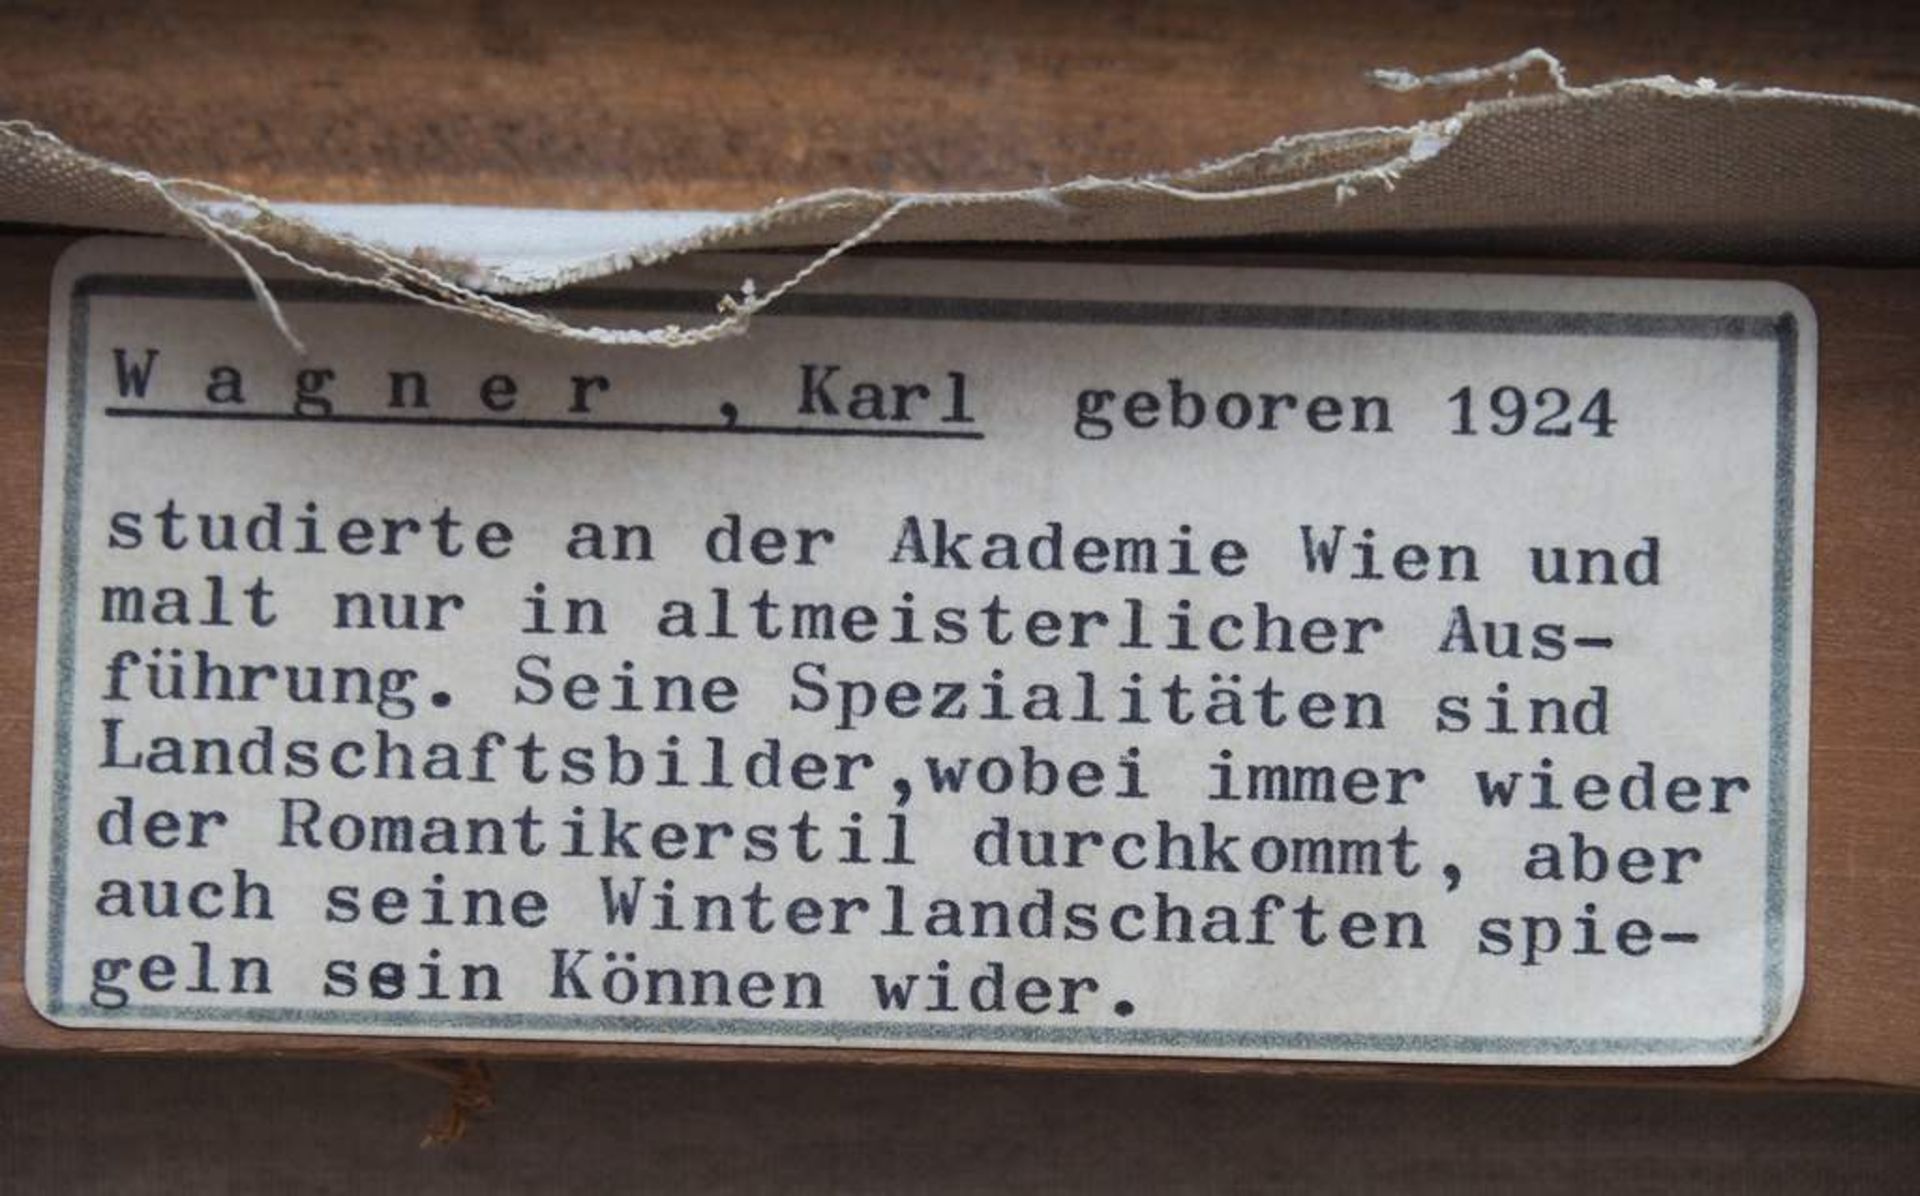 WAGNER, Karl. (1924) Winterlandschaft. Öl auf Leinwand, links unten signiert. Höhe 60 cm - Bild 4 aus 6